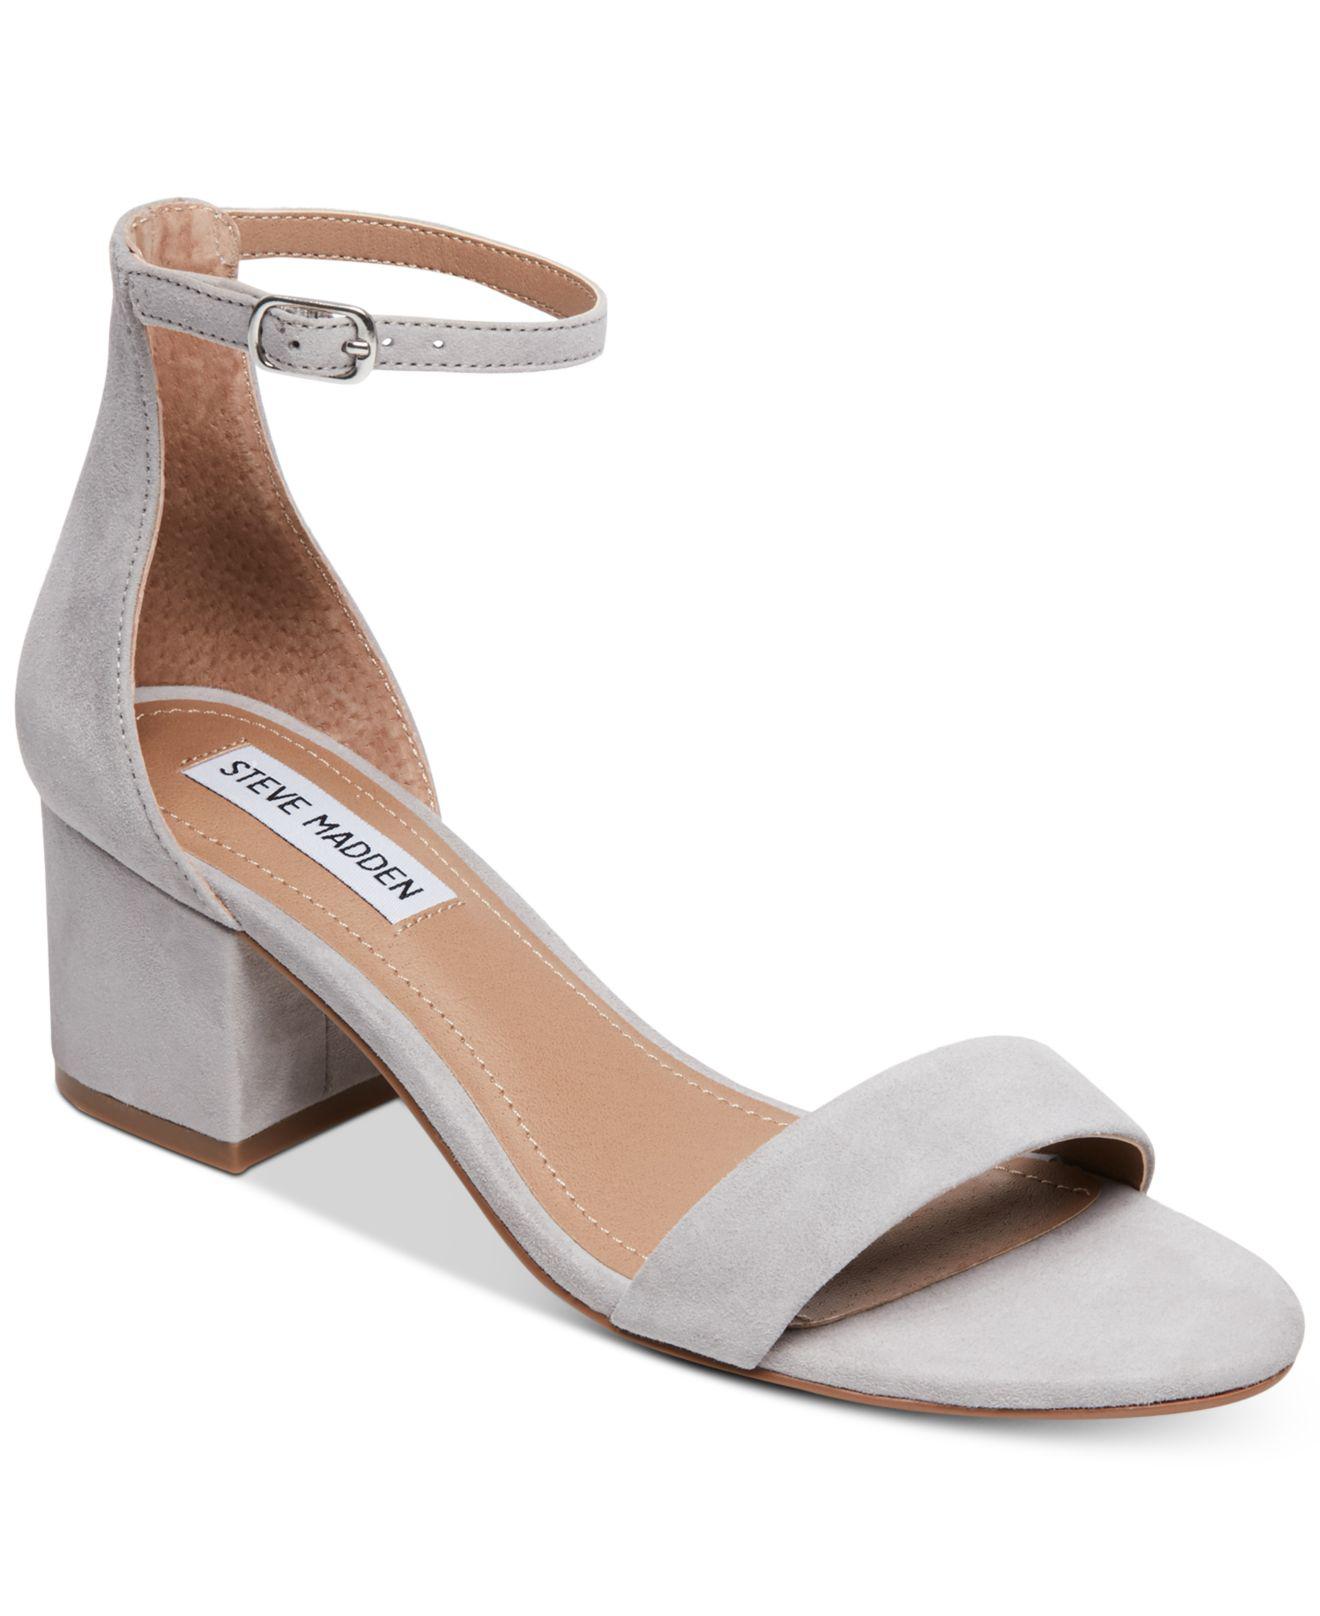 Silver grey block heel with a tie up strap